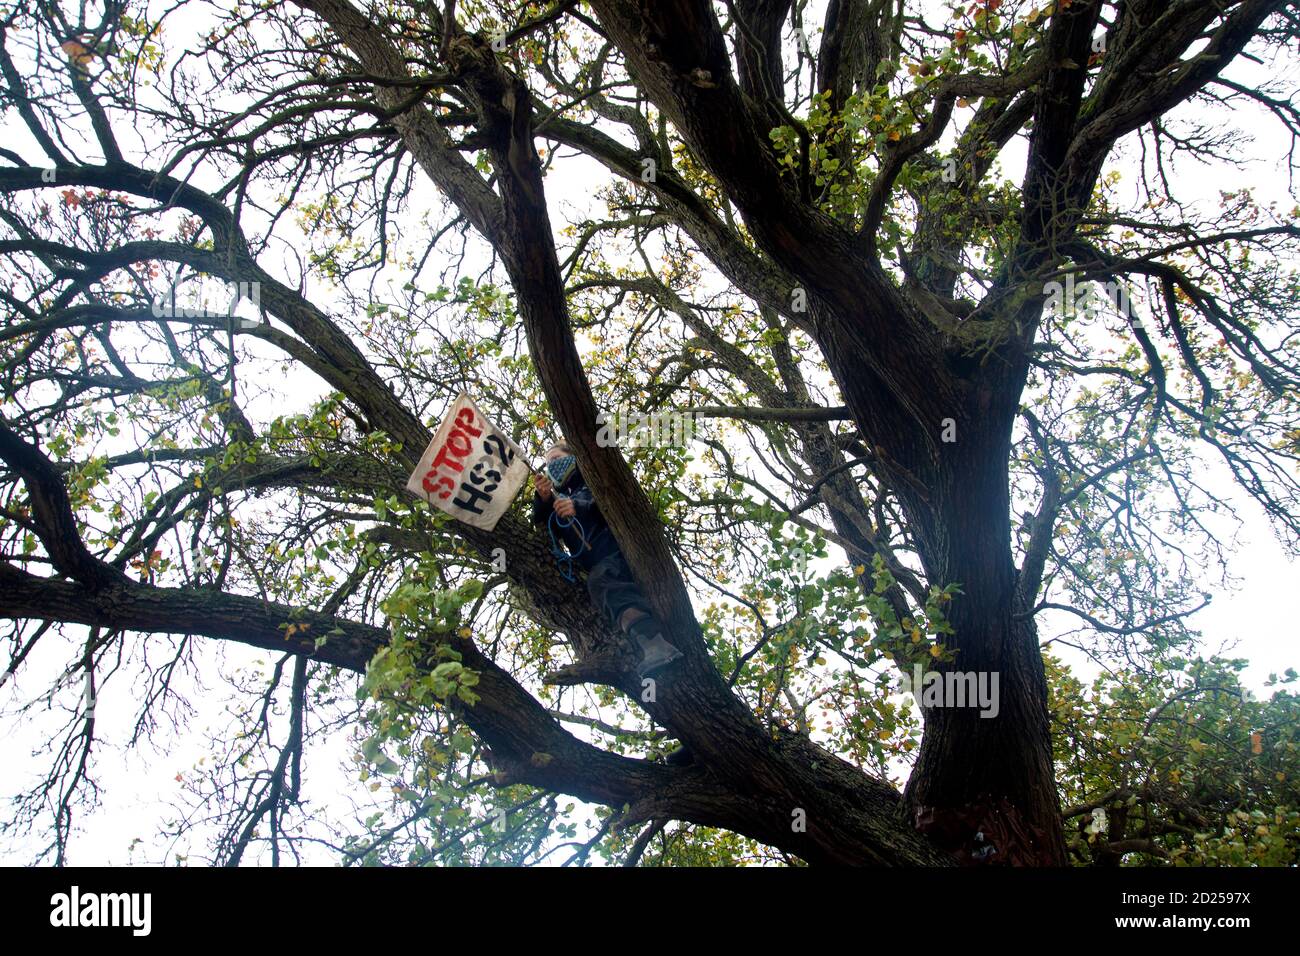 Warwickshire, Reino Unido. 5 de octubre de 2020. Los manifestantes HS2 rompen a través de barricadas para llamar la atención sobre la destrucción de un árbol de 250 años de edad, del año 2015, el árbol Cubbington Pear 05 oct 2020. Un protestor logra escabullirse detrás de la seguridad para subir el árbol donde se agita un estandarte Stop HS2 crédito: Denise Laura Baker/Alamy Live News Foto de stock